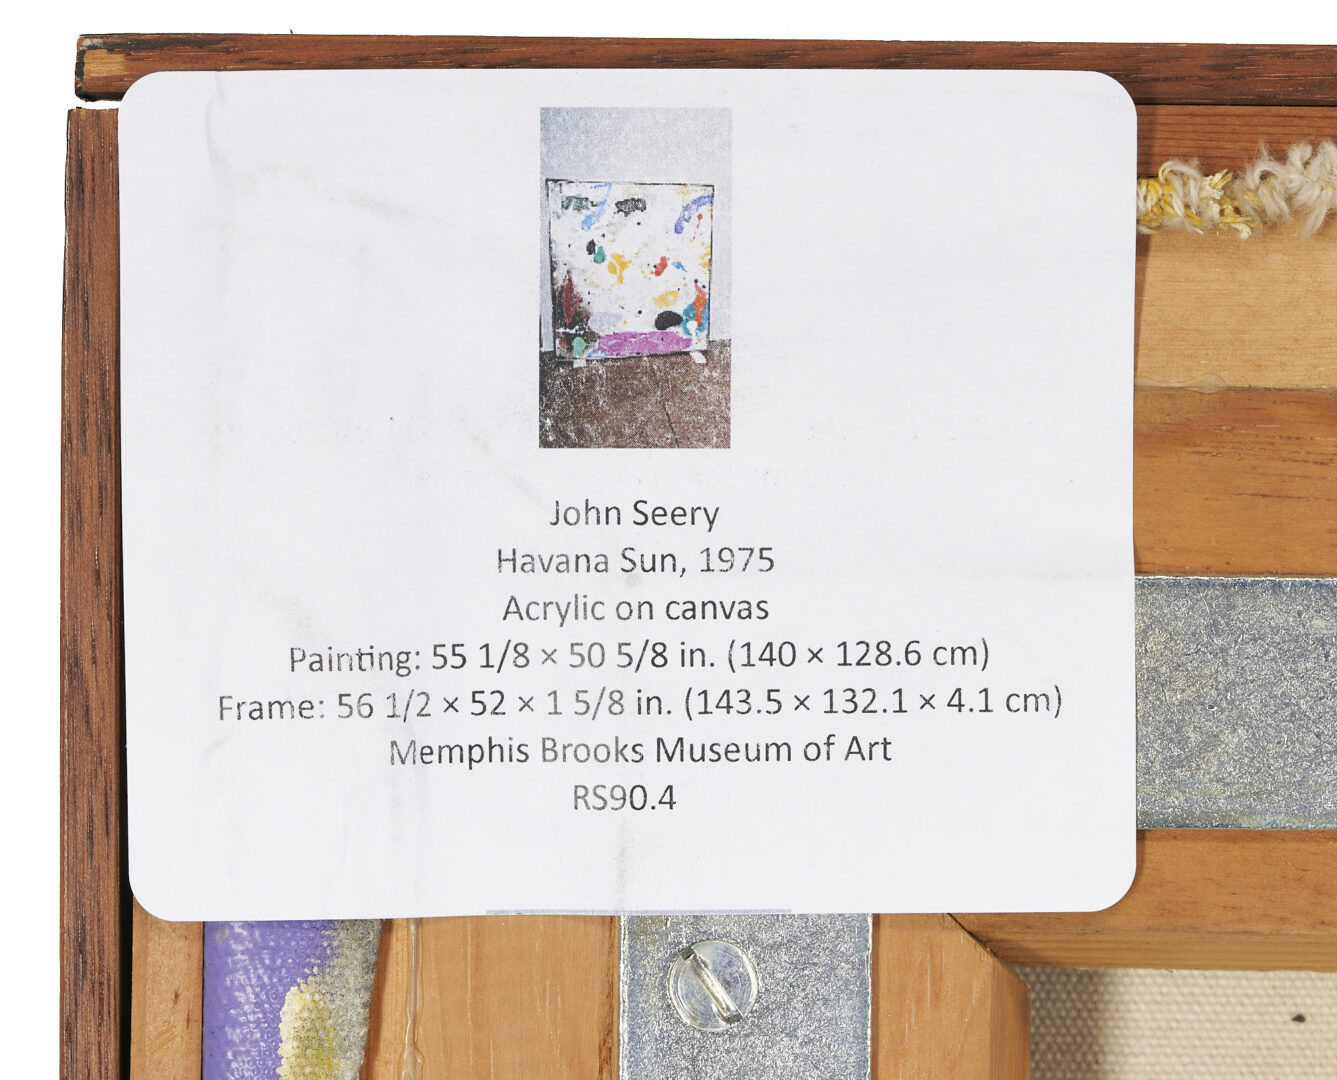 Lot 451: John Seery Large Abstract Acrylic on Canvas, Havana Sun